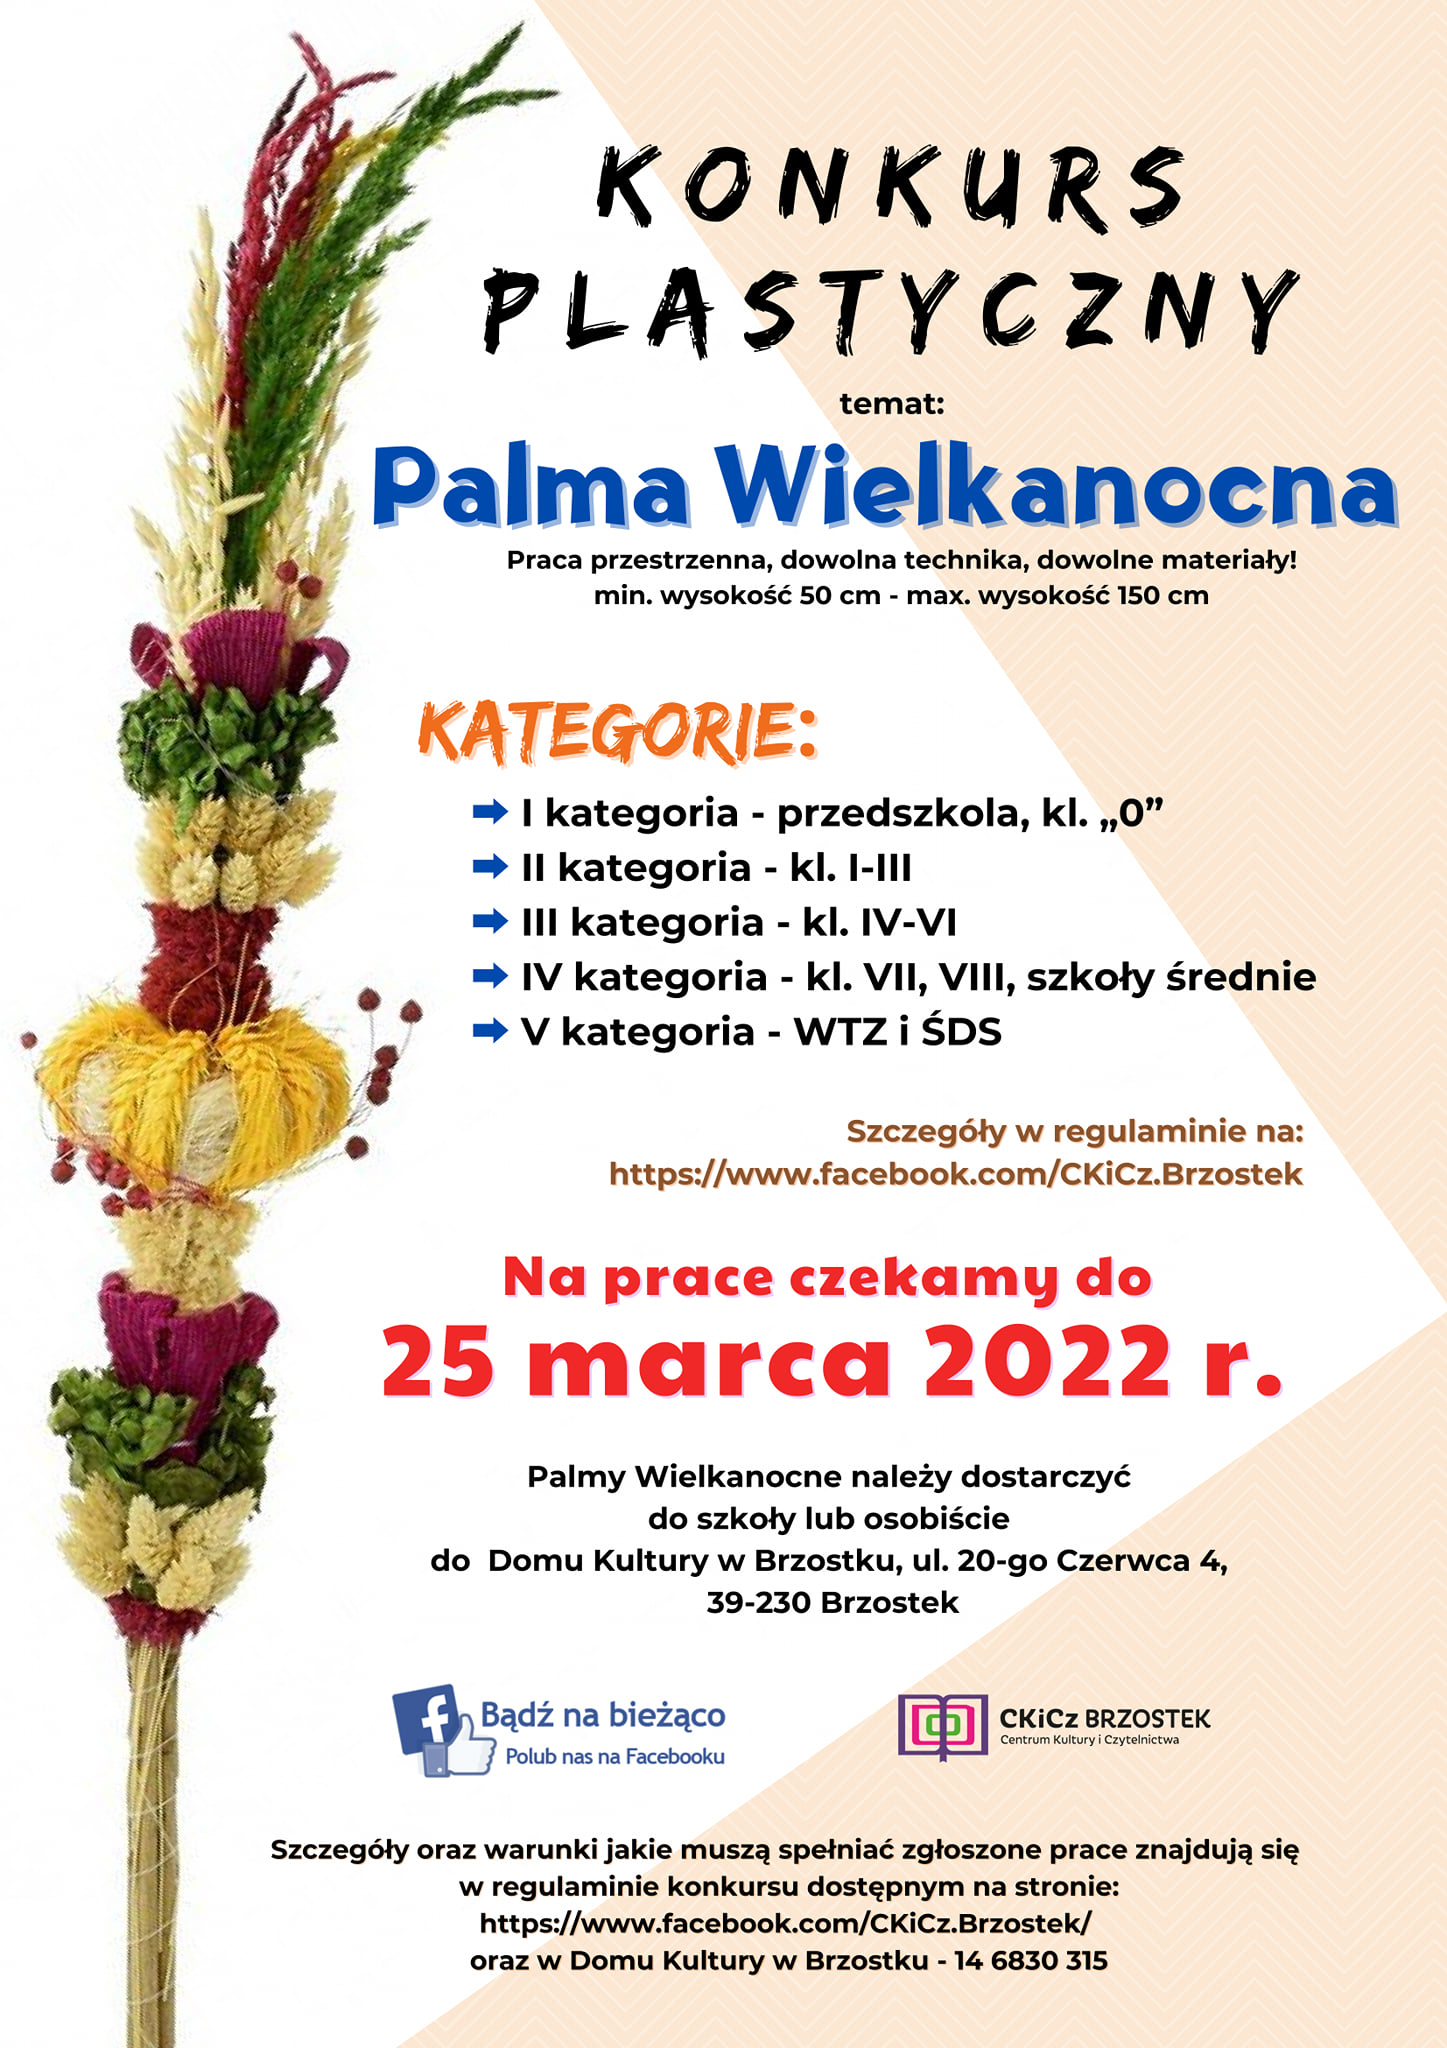 Konkurs Plastyczny „Palma Wielkanocna 2022”